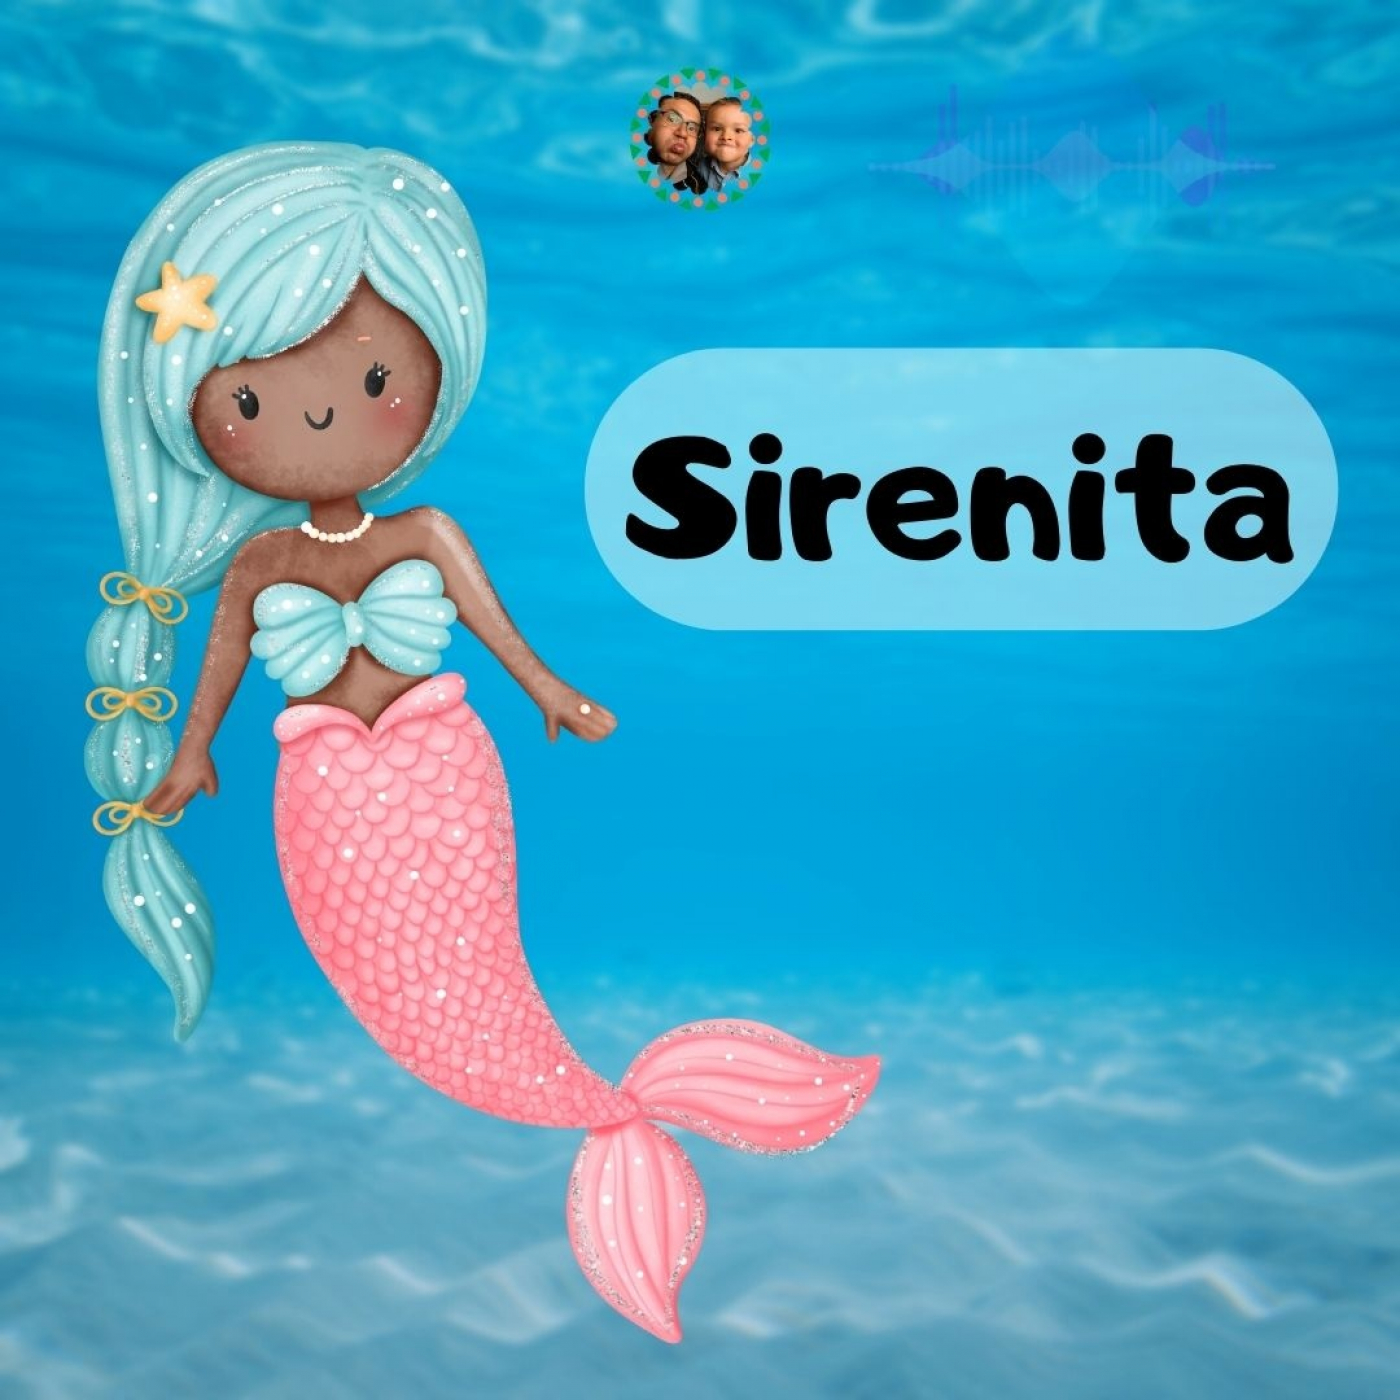 Sirenita